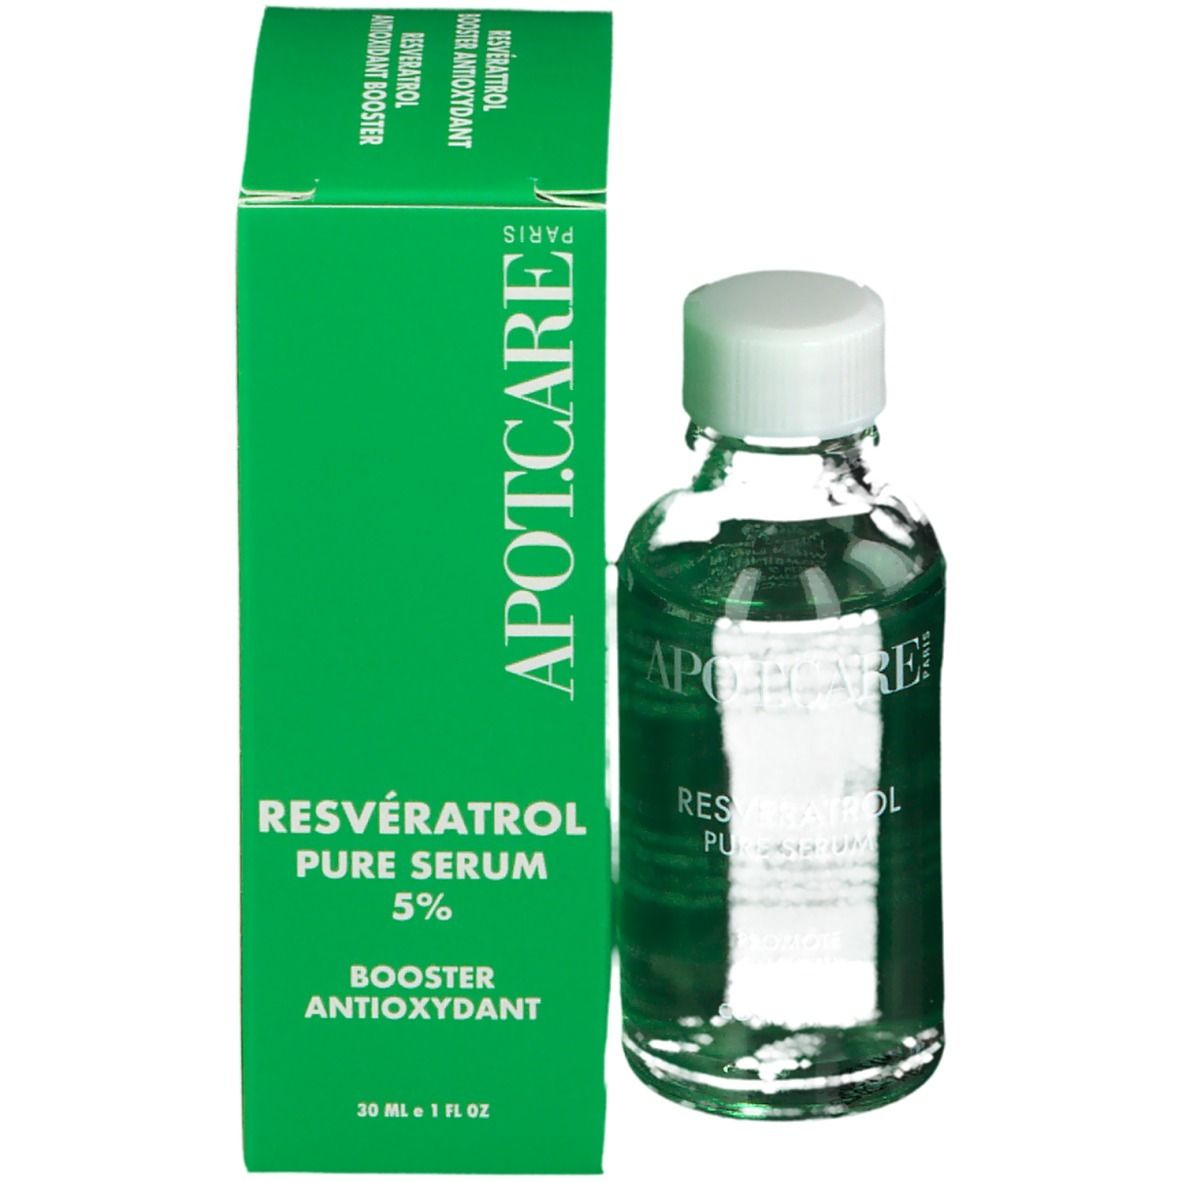 APOT.CARE Pure Serum Resveratrol